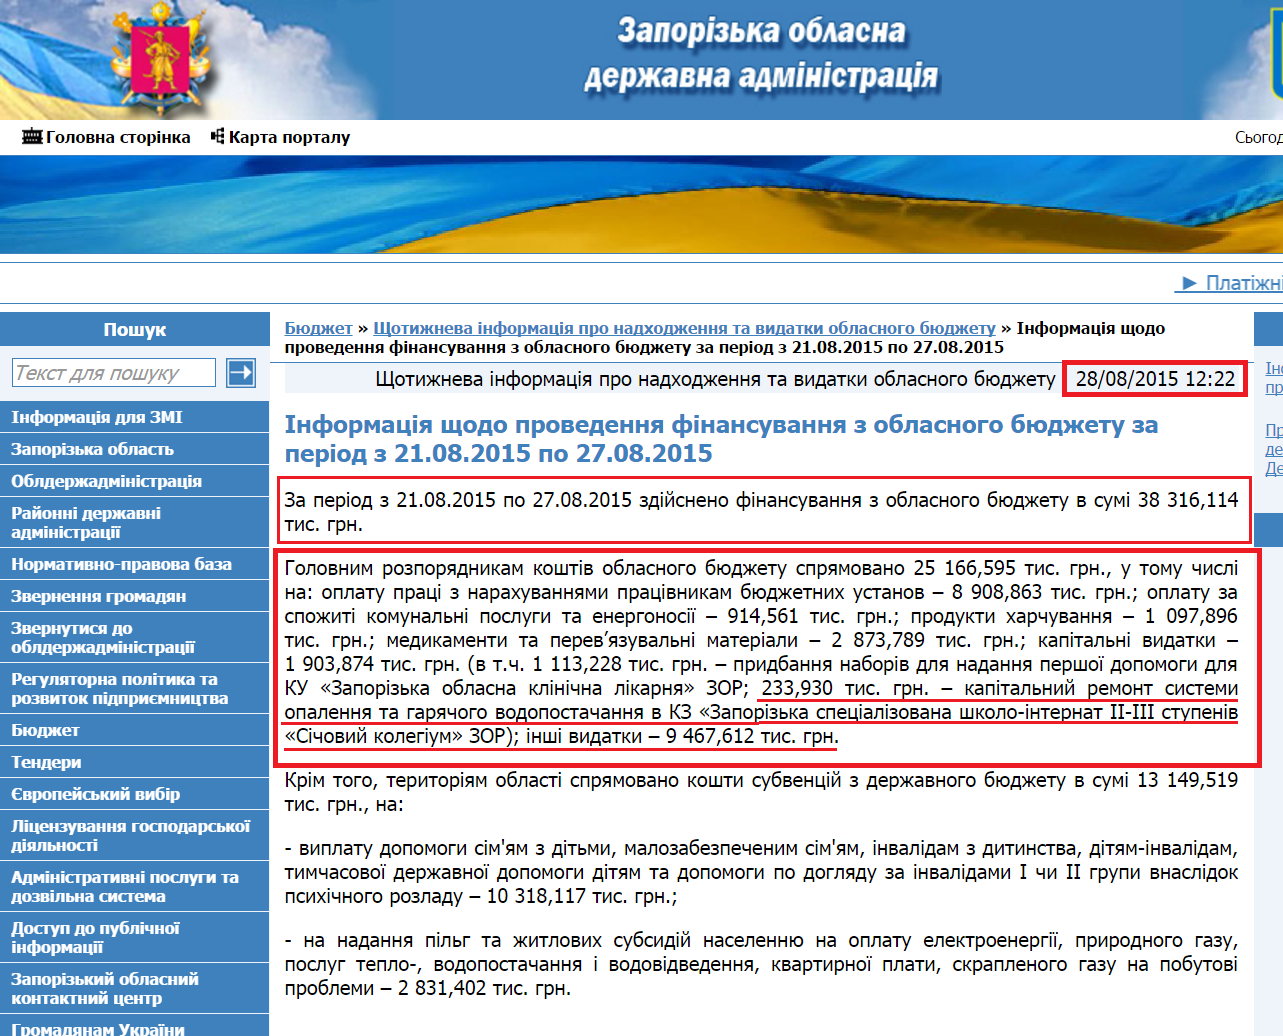 http://www.zoda.gov.ua/news/28323/informatsiya-shodo-provedennya-finansuvannya-z-oblasnogo-bjudzhetu-za-period-z-21.08.2015-po-27.08.2015.html